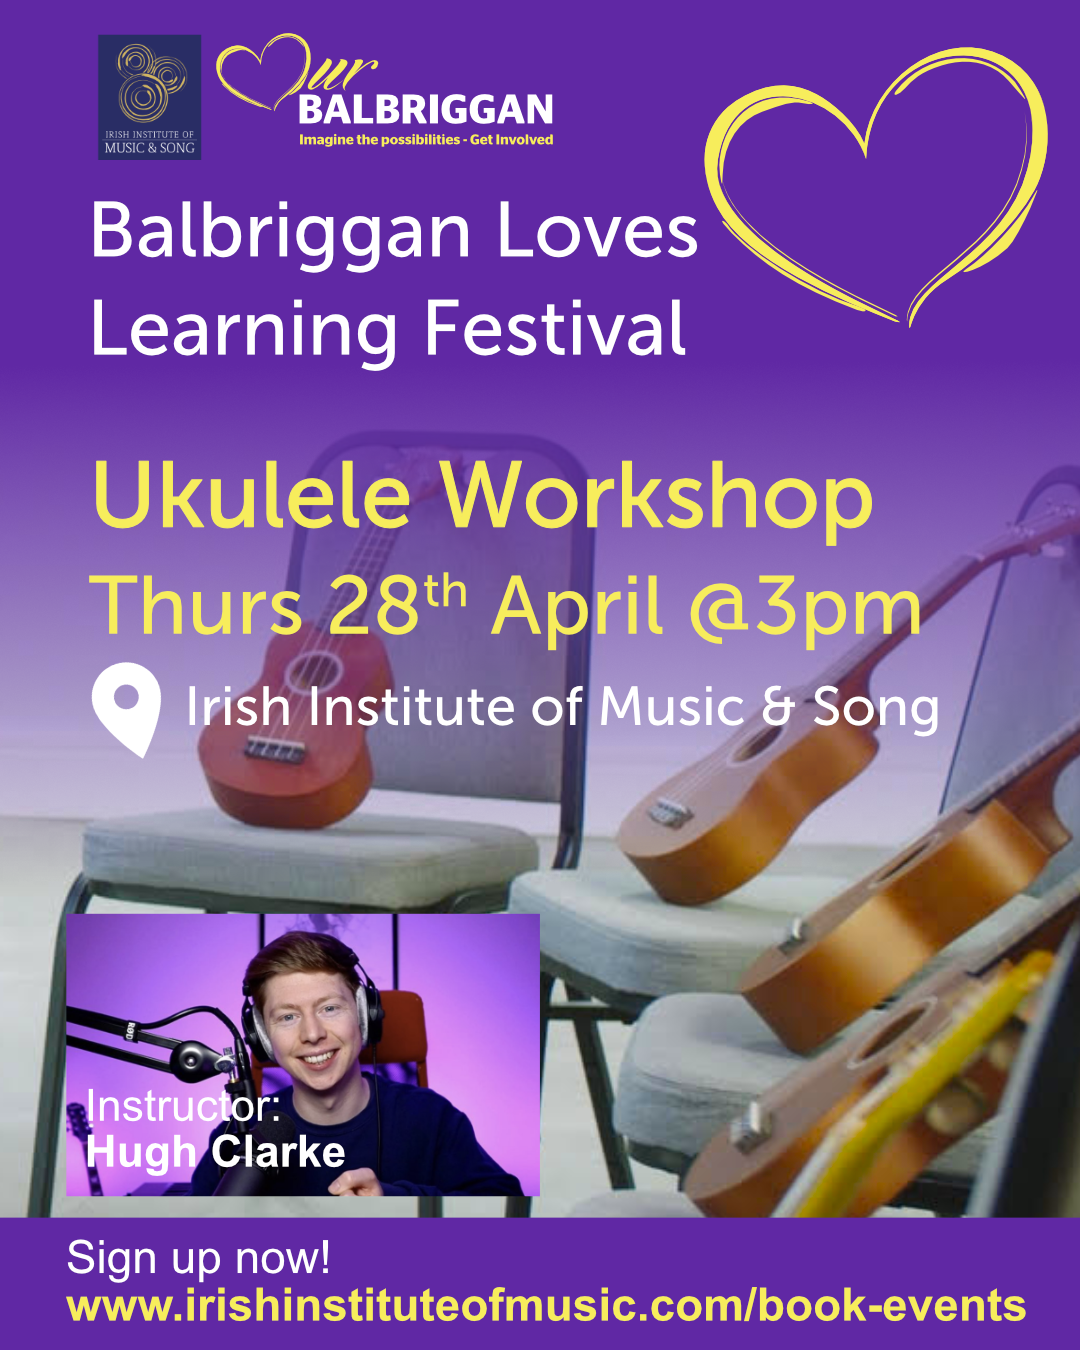 Ukulele Workshop with the Irish Institute of Music & Song